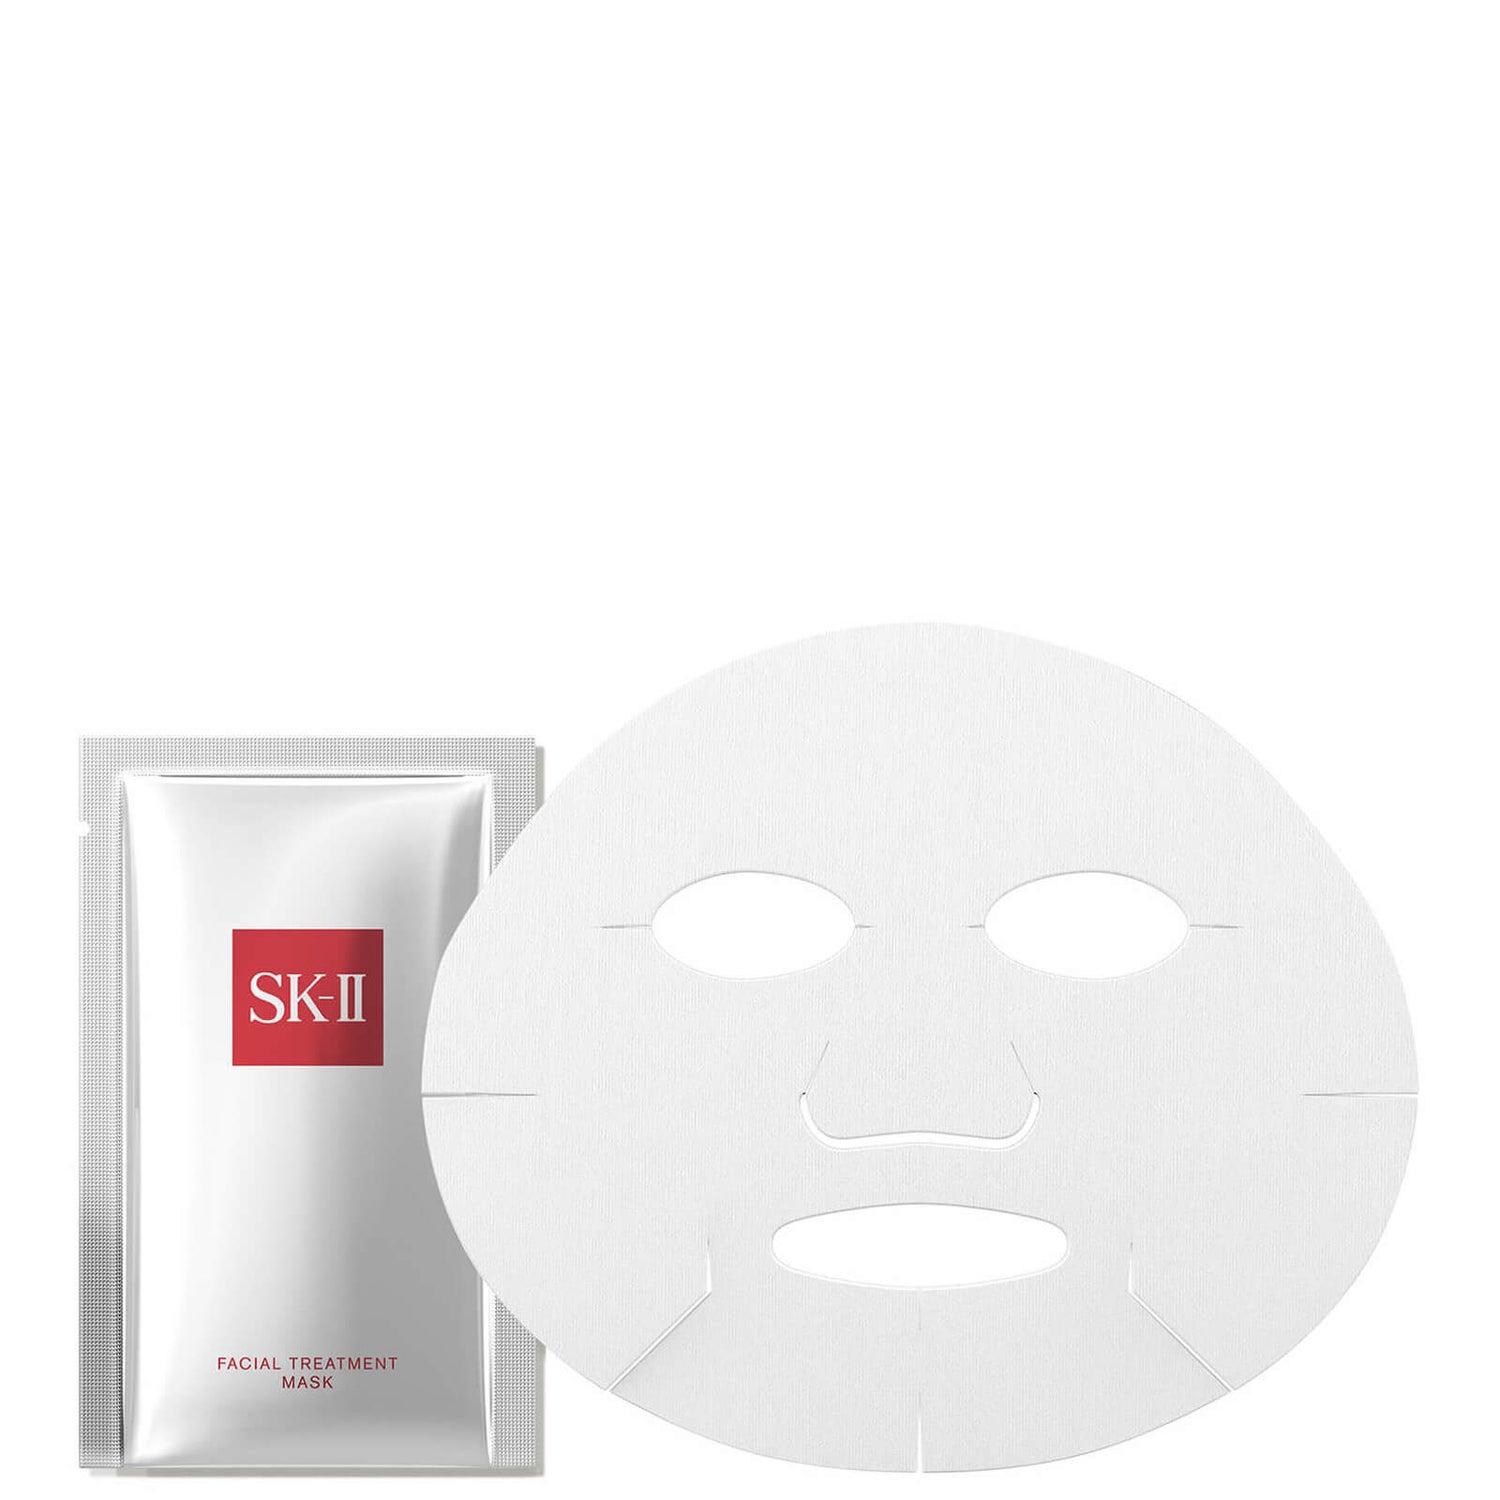 SK-II Facial Treatment Mask (10 count)